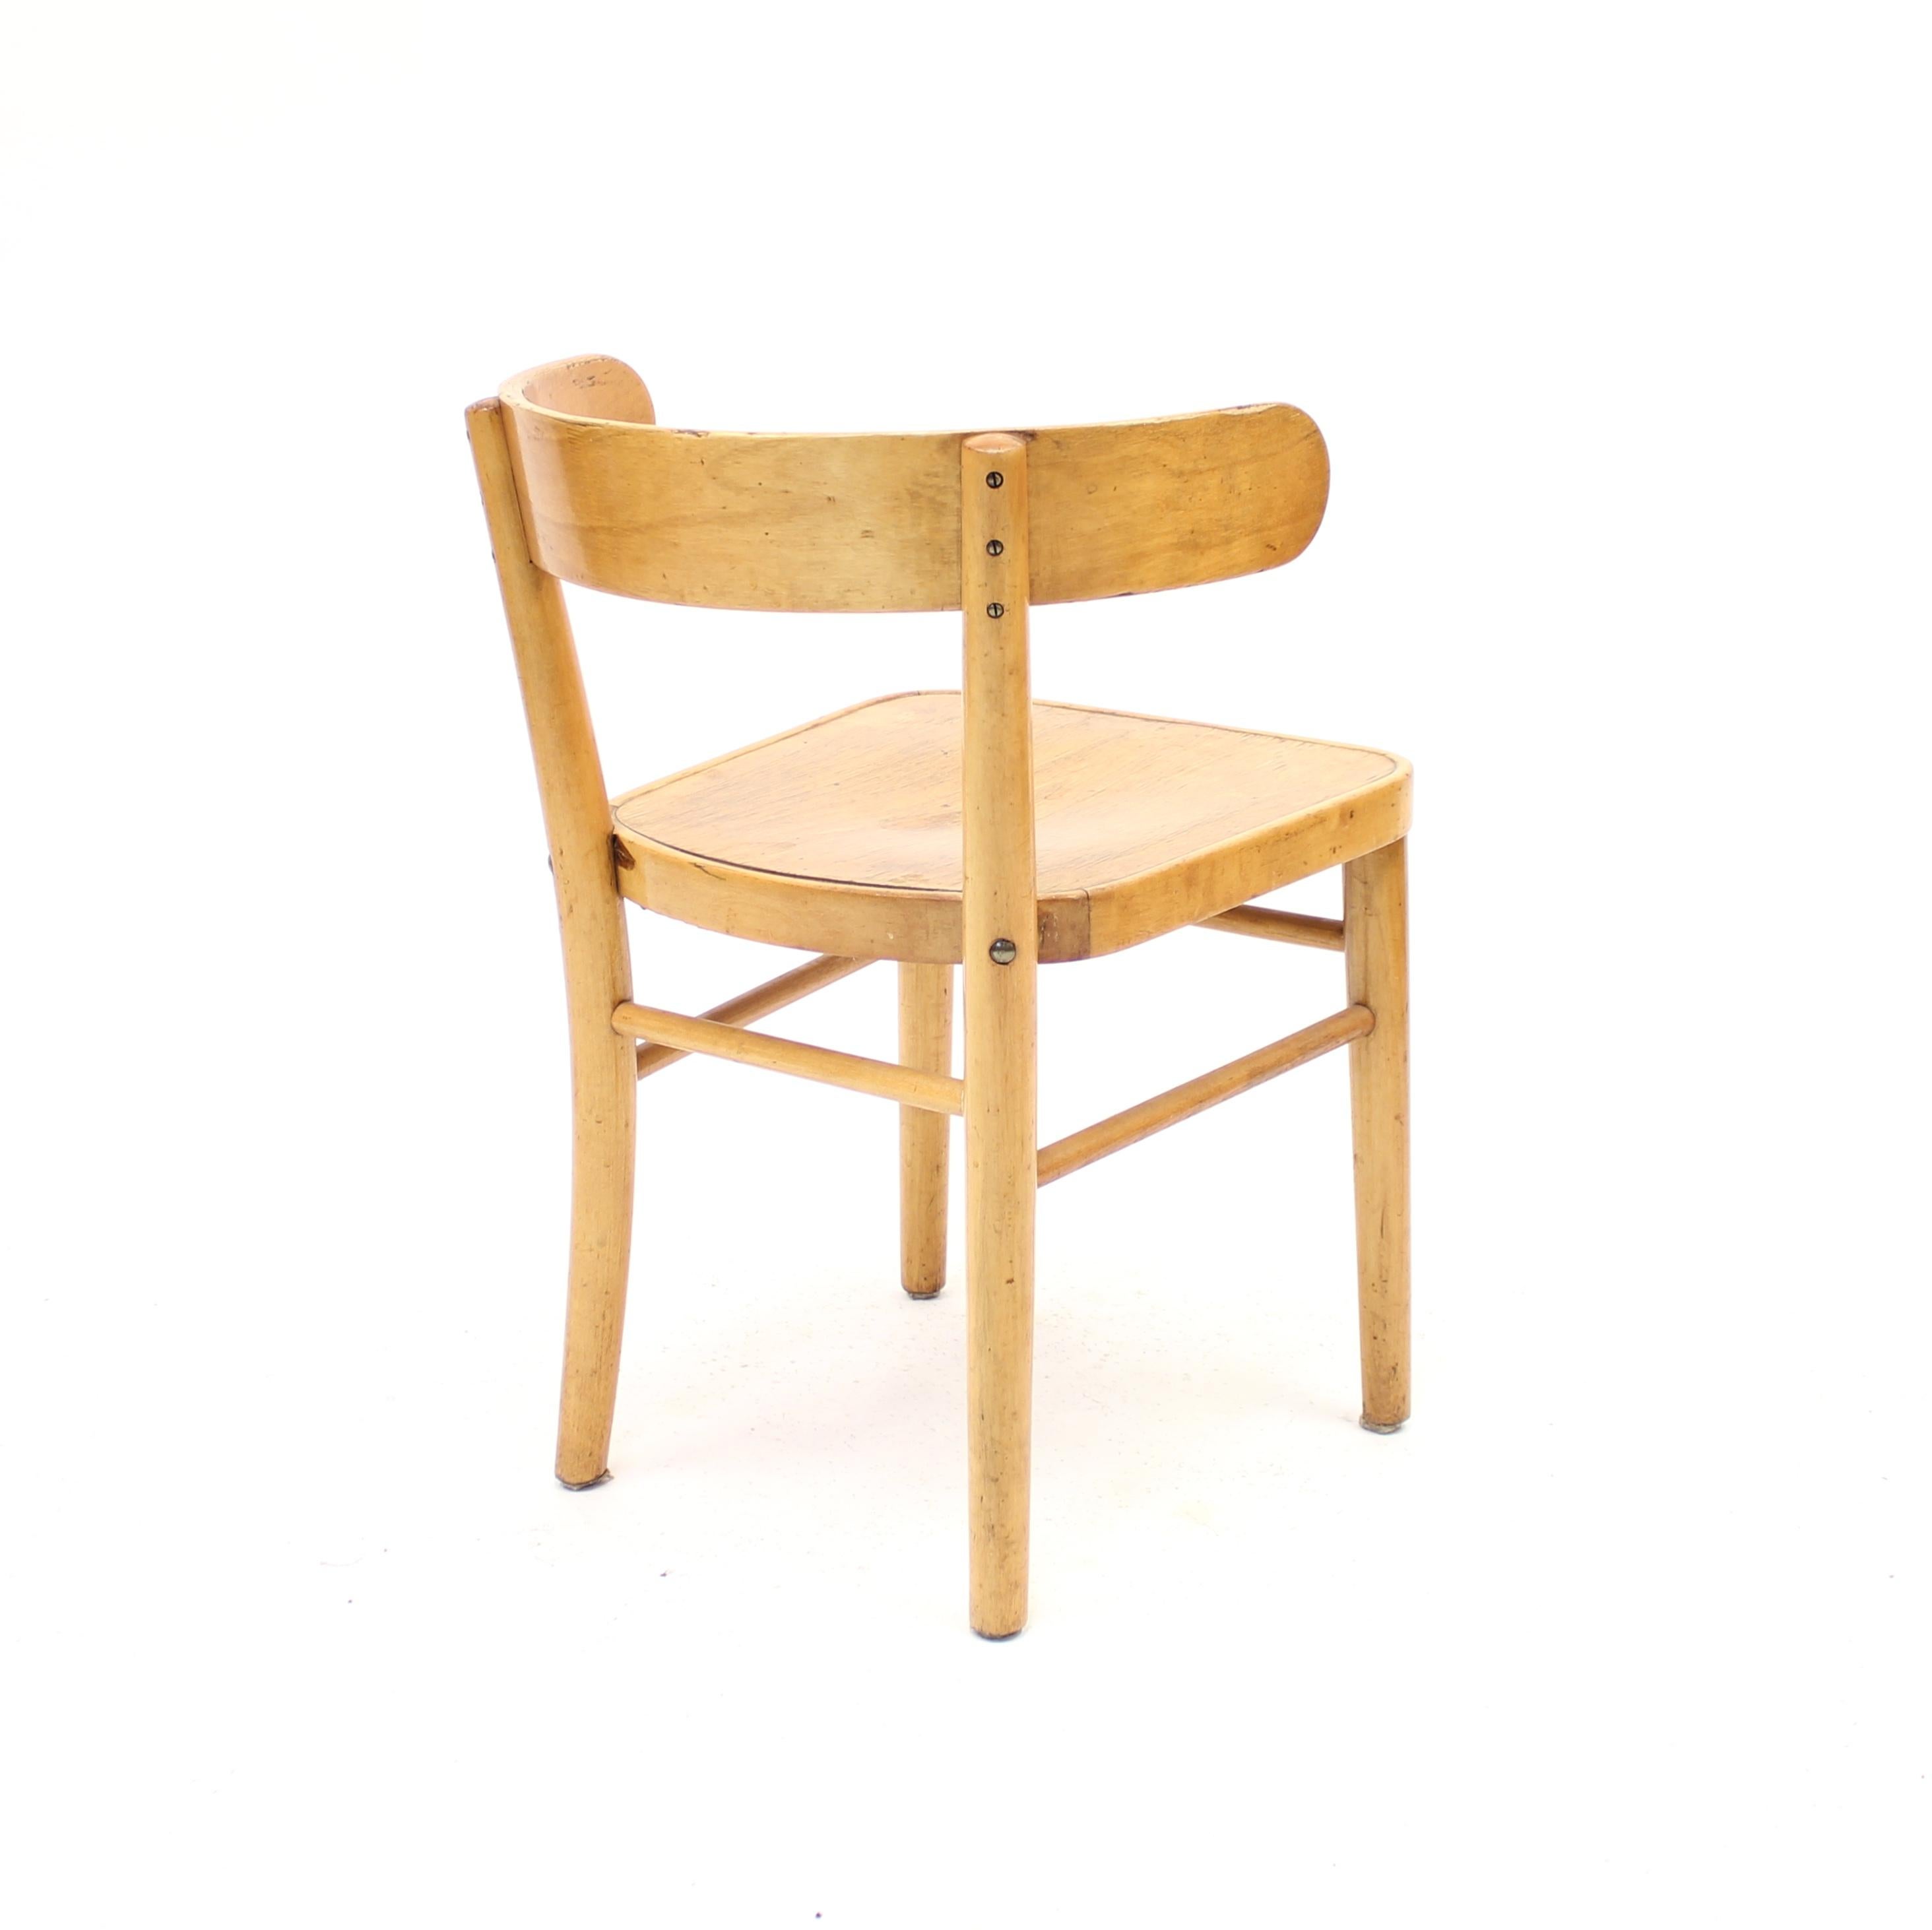 Mid-20th Century Werner West, Hugging Chair, Wilhelm Schauman Ltd, 1940s For Sale